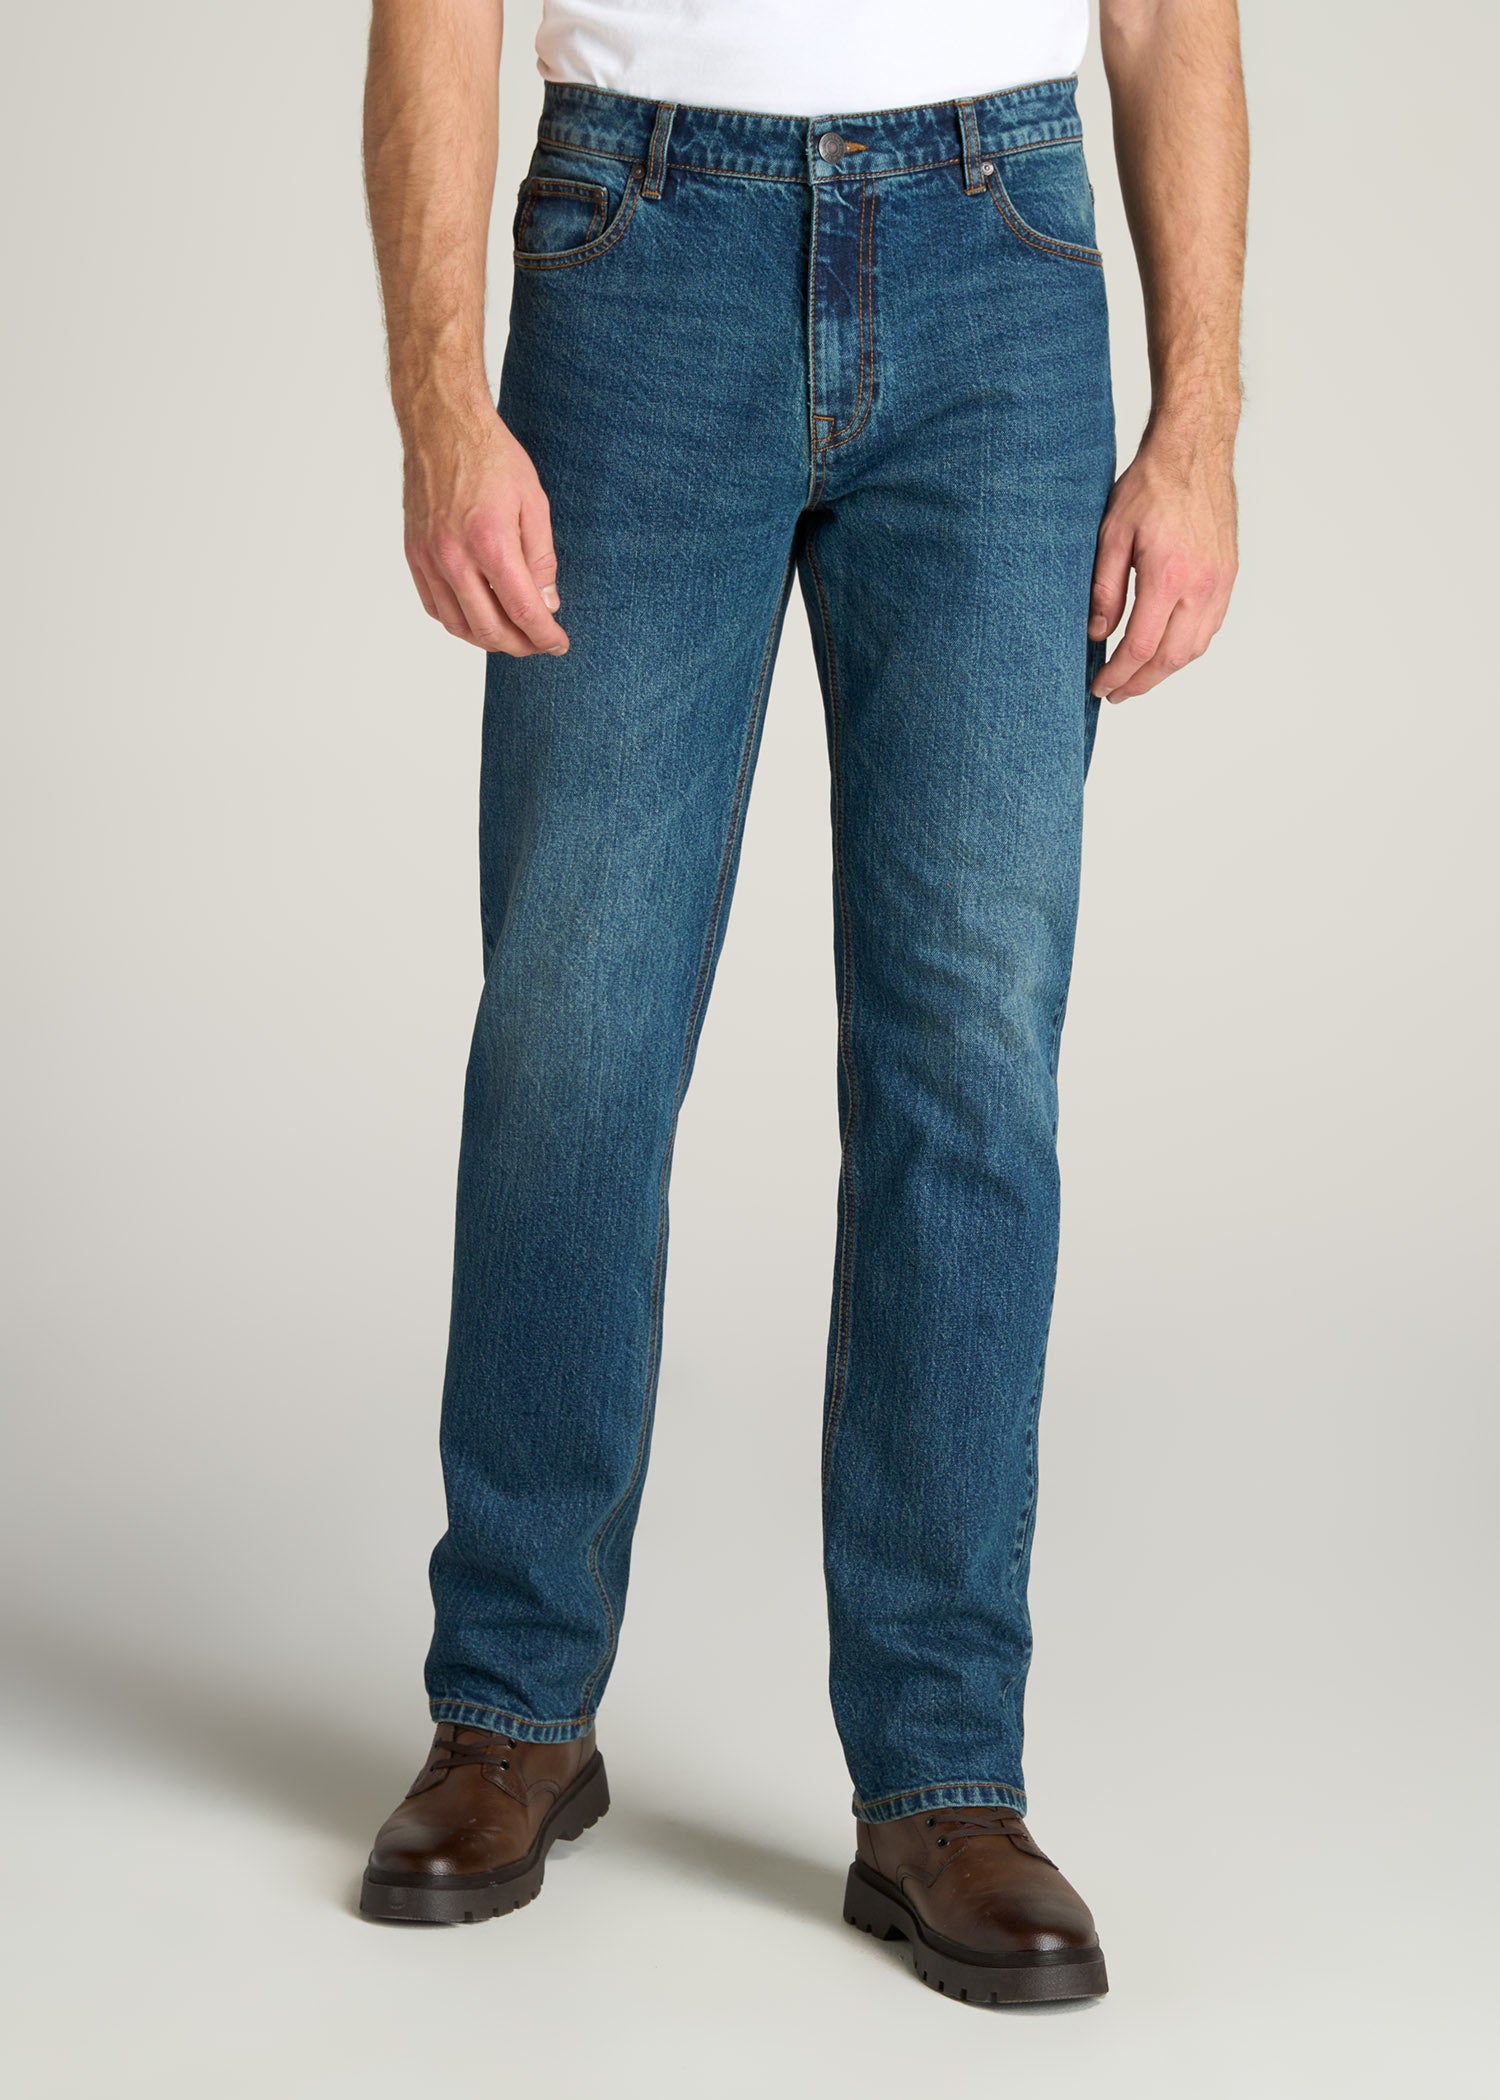 LJ&S STRAIGHT LEG Jeans for Tall Men in Machine Blue